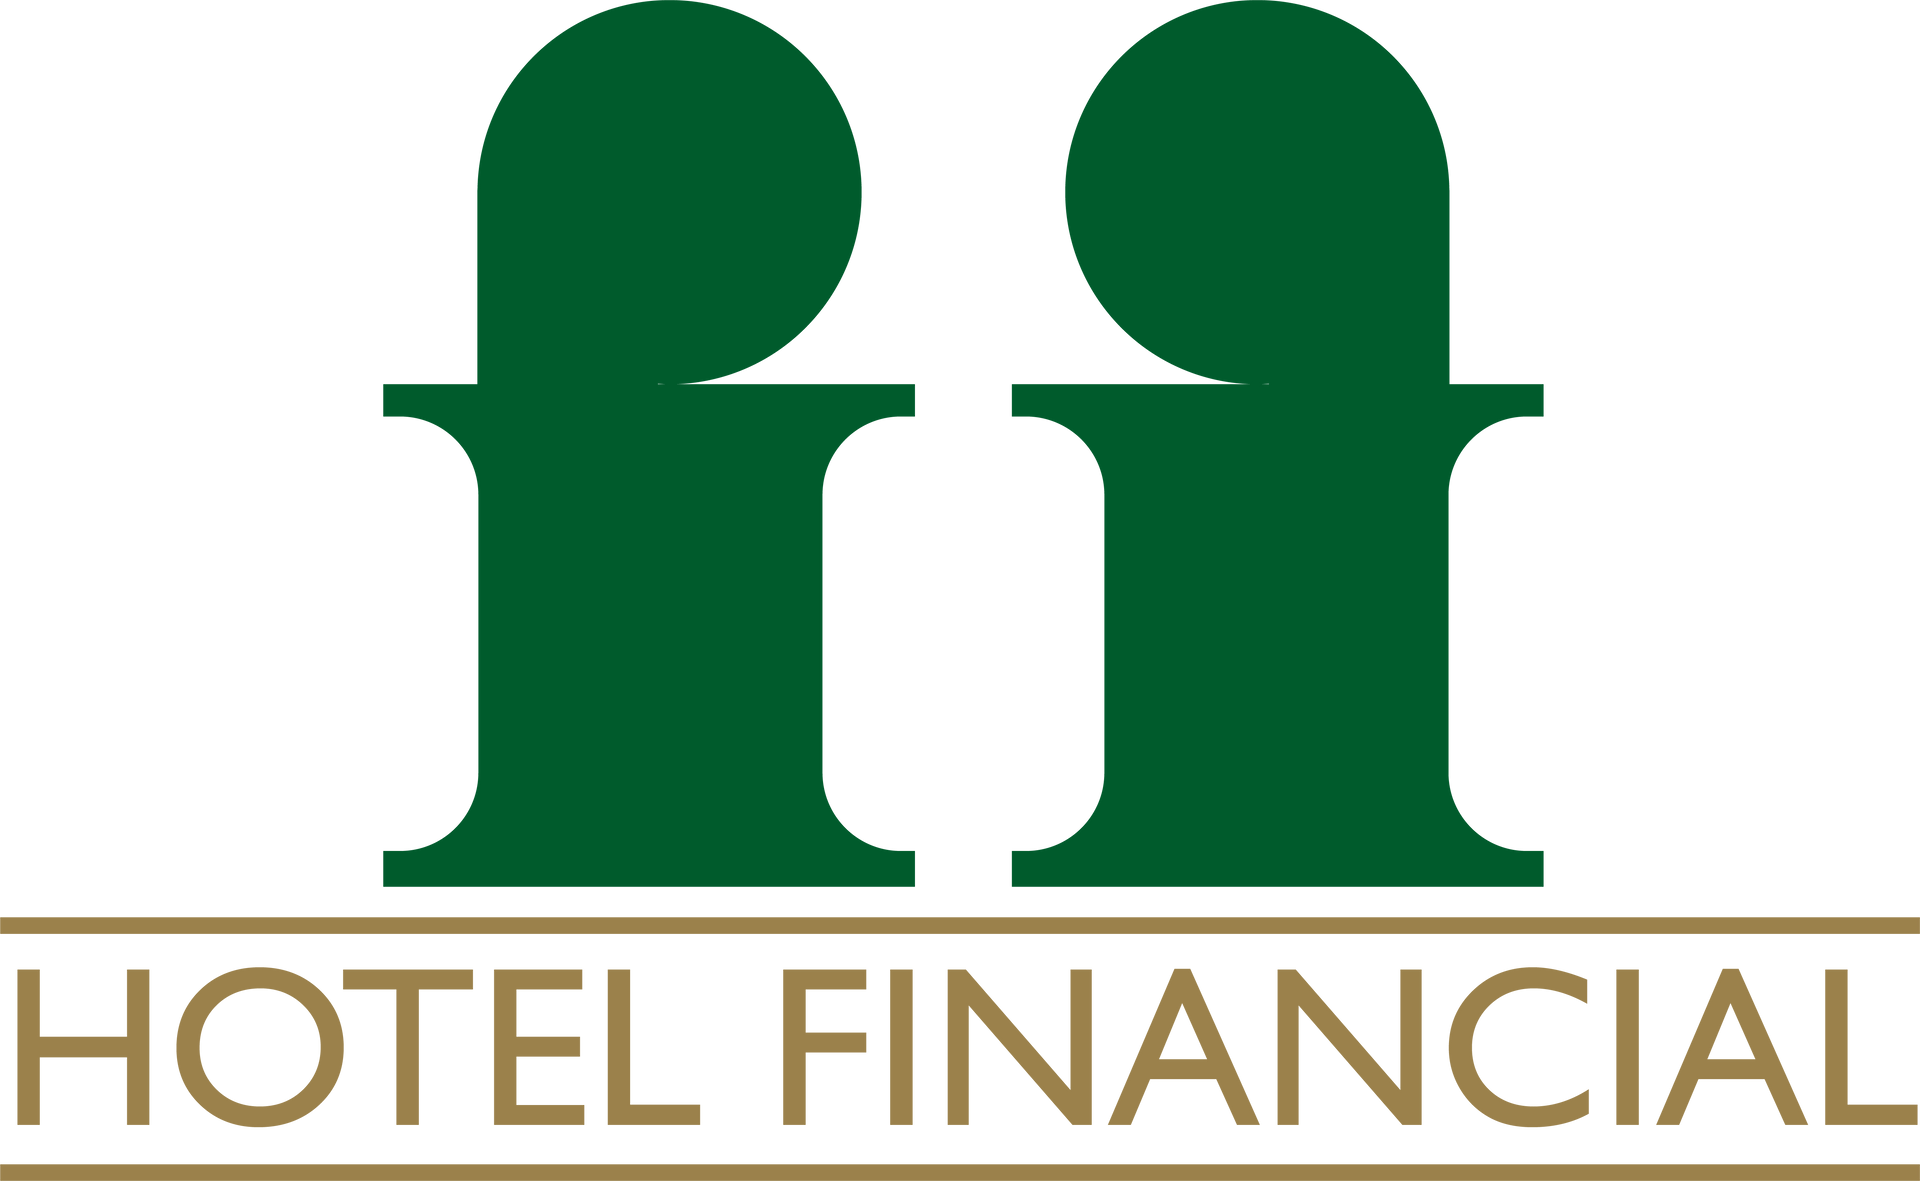 (c) Hotelfinancial.com.br